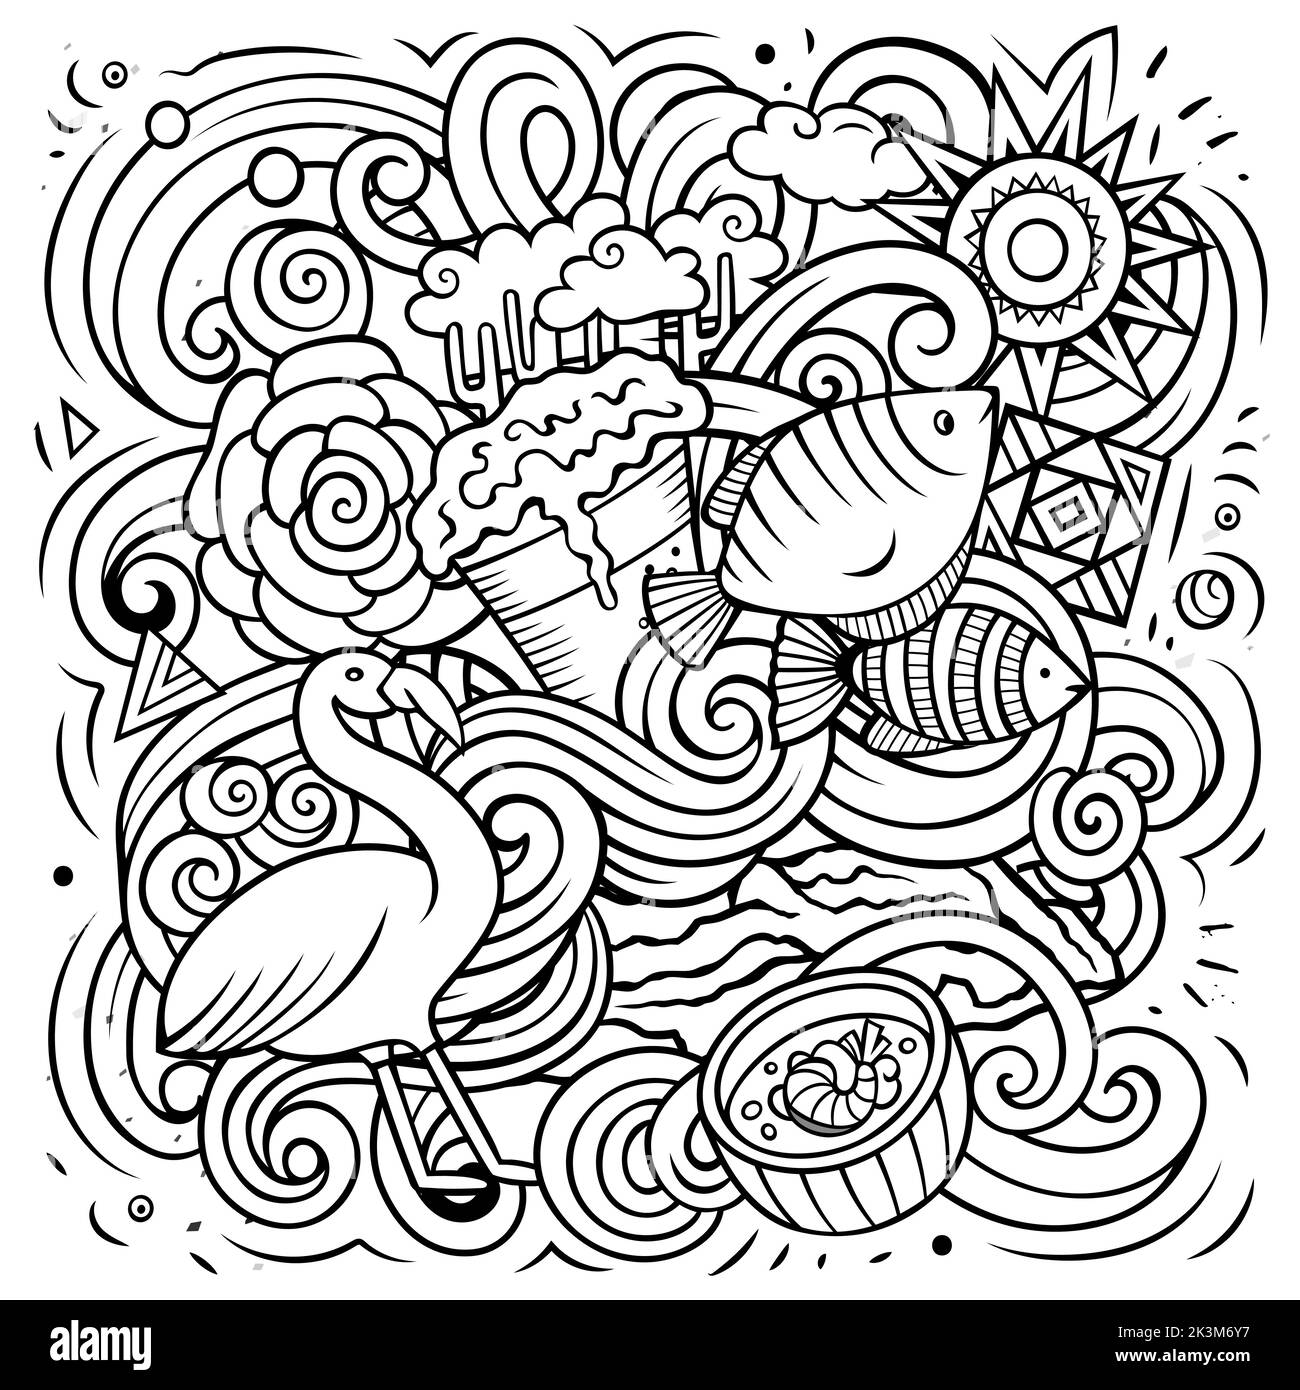 Ecuador handgezeichnete Cartoon-Kritzeleien Illustration. Witziges Design. Stock Vektor